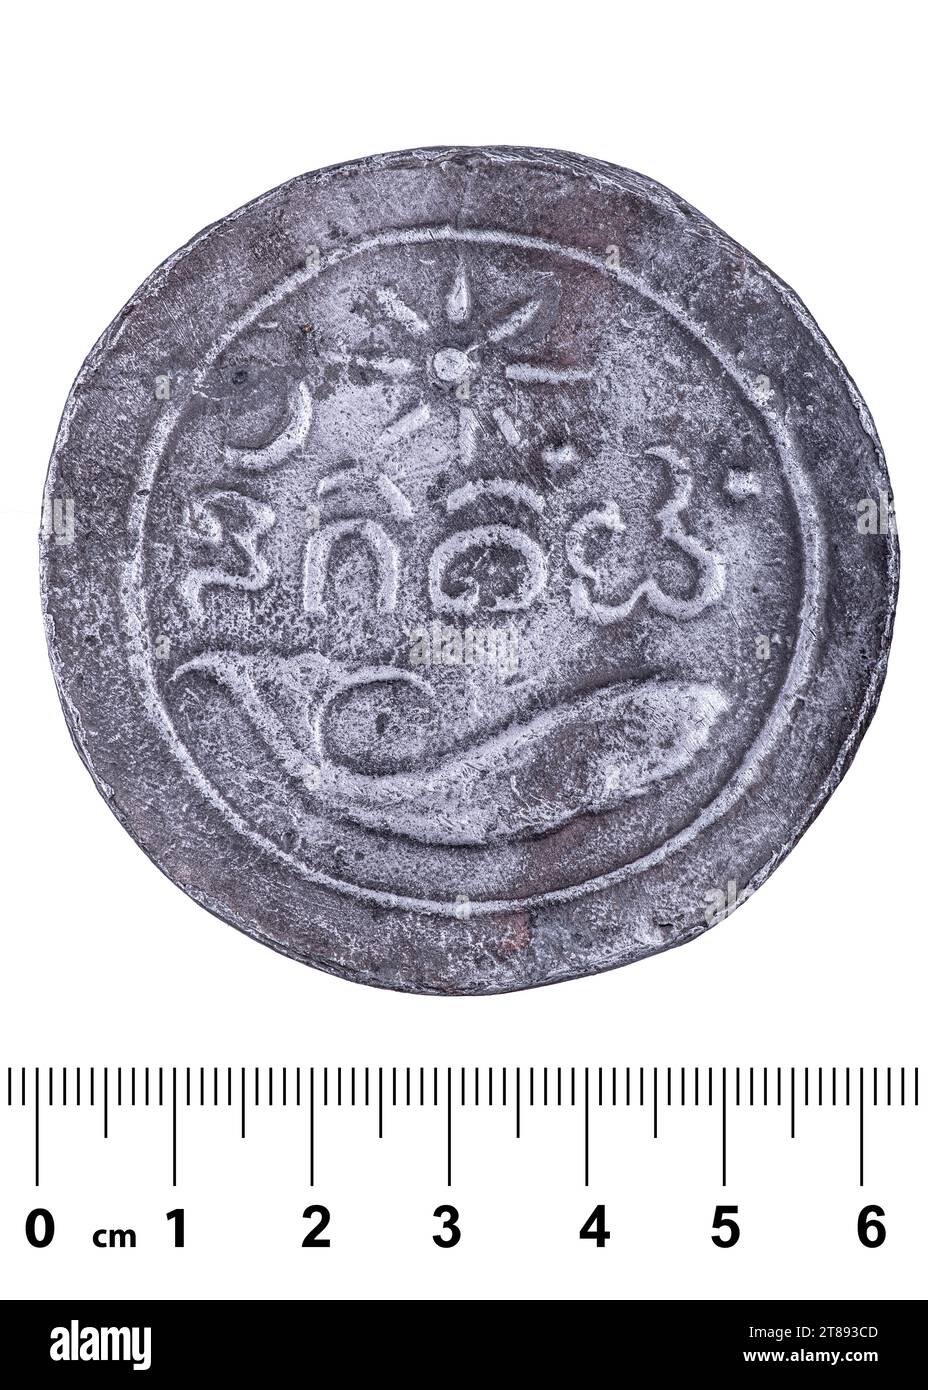 Un'antica moneta del regno di Funan con un'immagine di una balena e un'iscrizione in un'antica lingua dimenticata. Retromarcia. Isolato su bianco Foto Stock